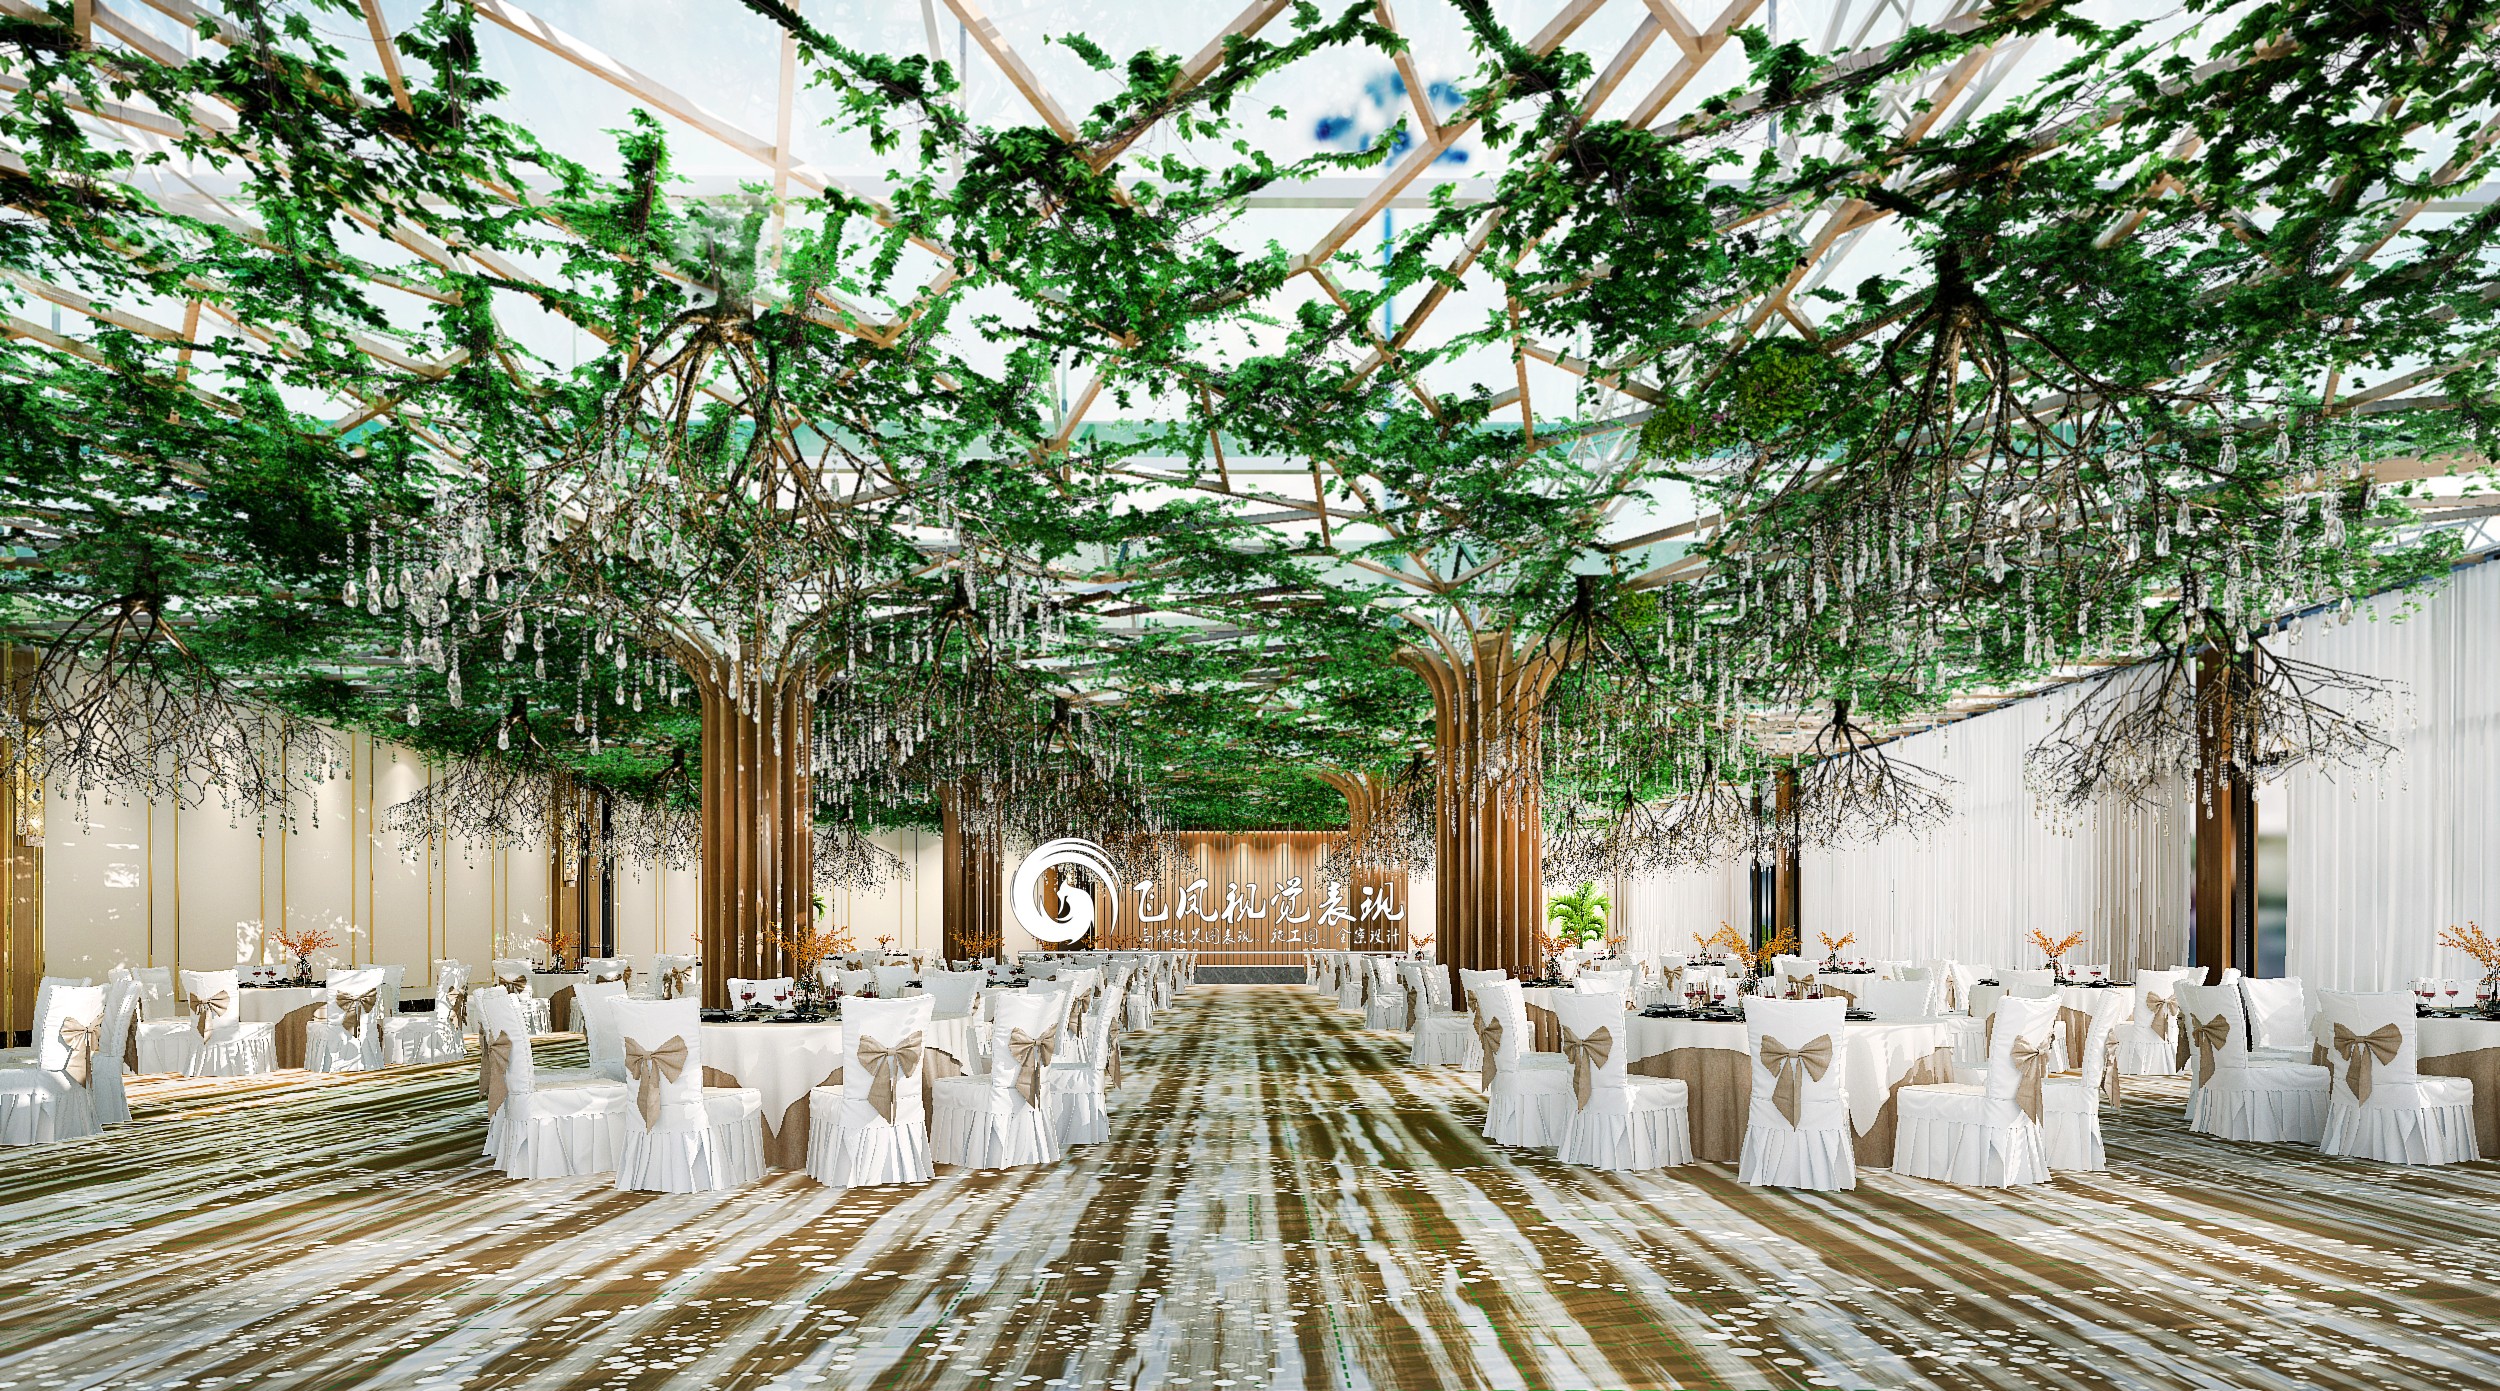 生态大棚餐厅 - 效果图交流区-建E室内设计网